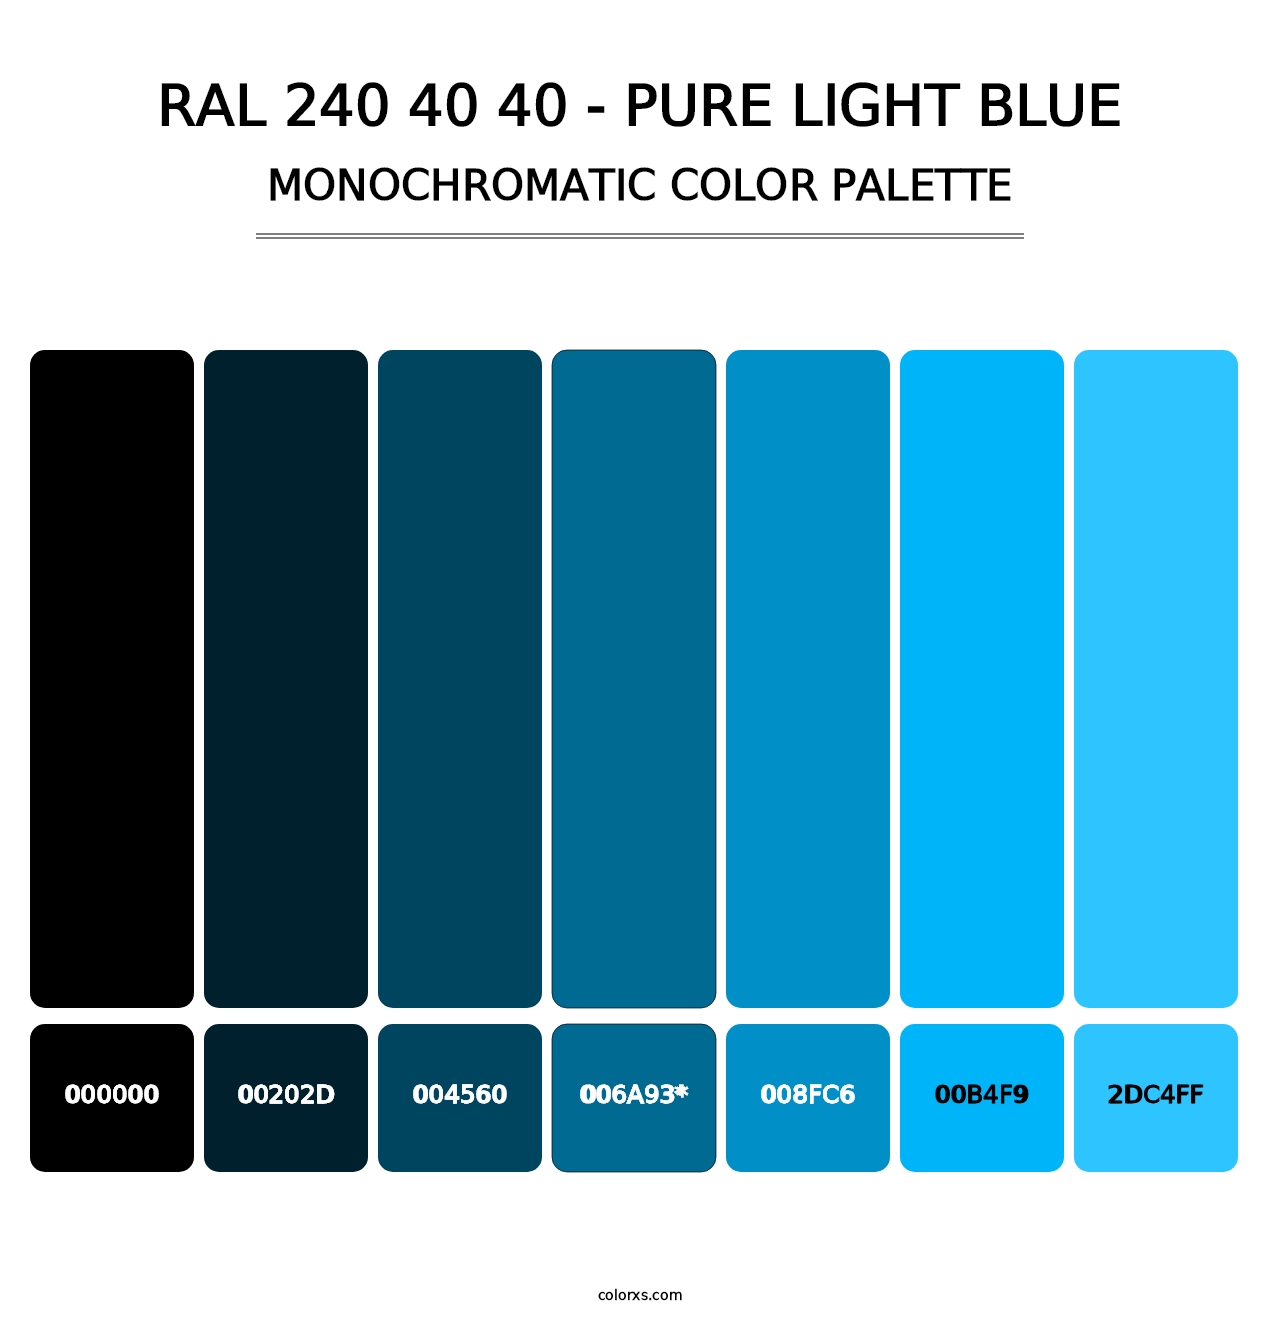 RAL 240 40 40 - Pure Light Blue - Monochromatic Color Palette